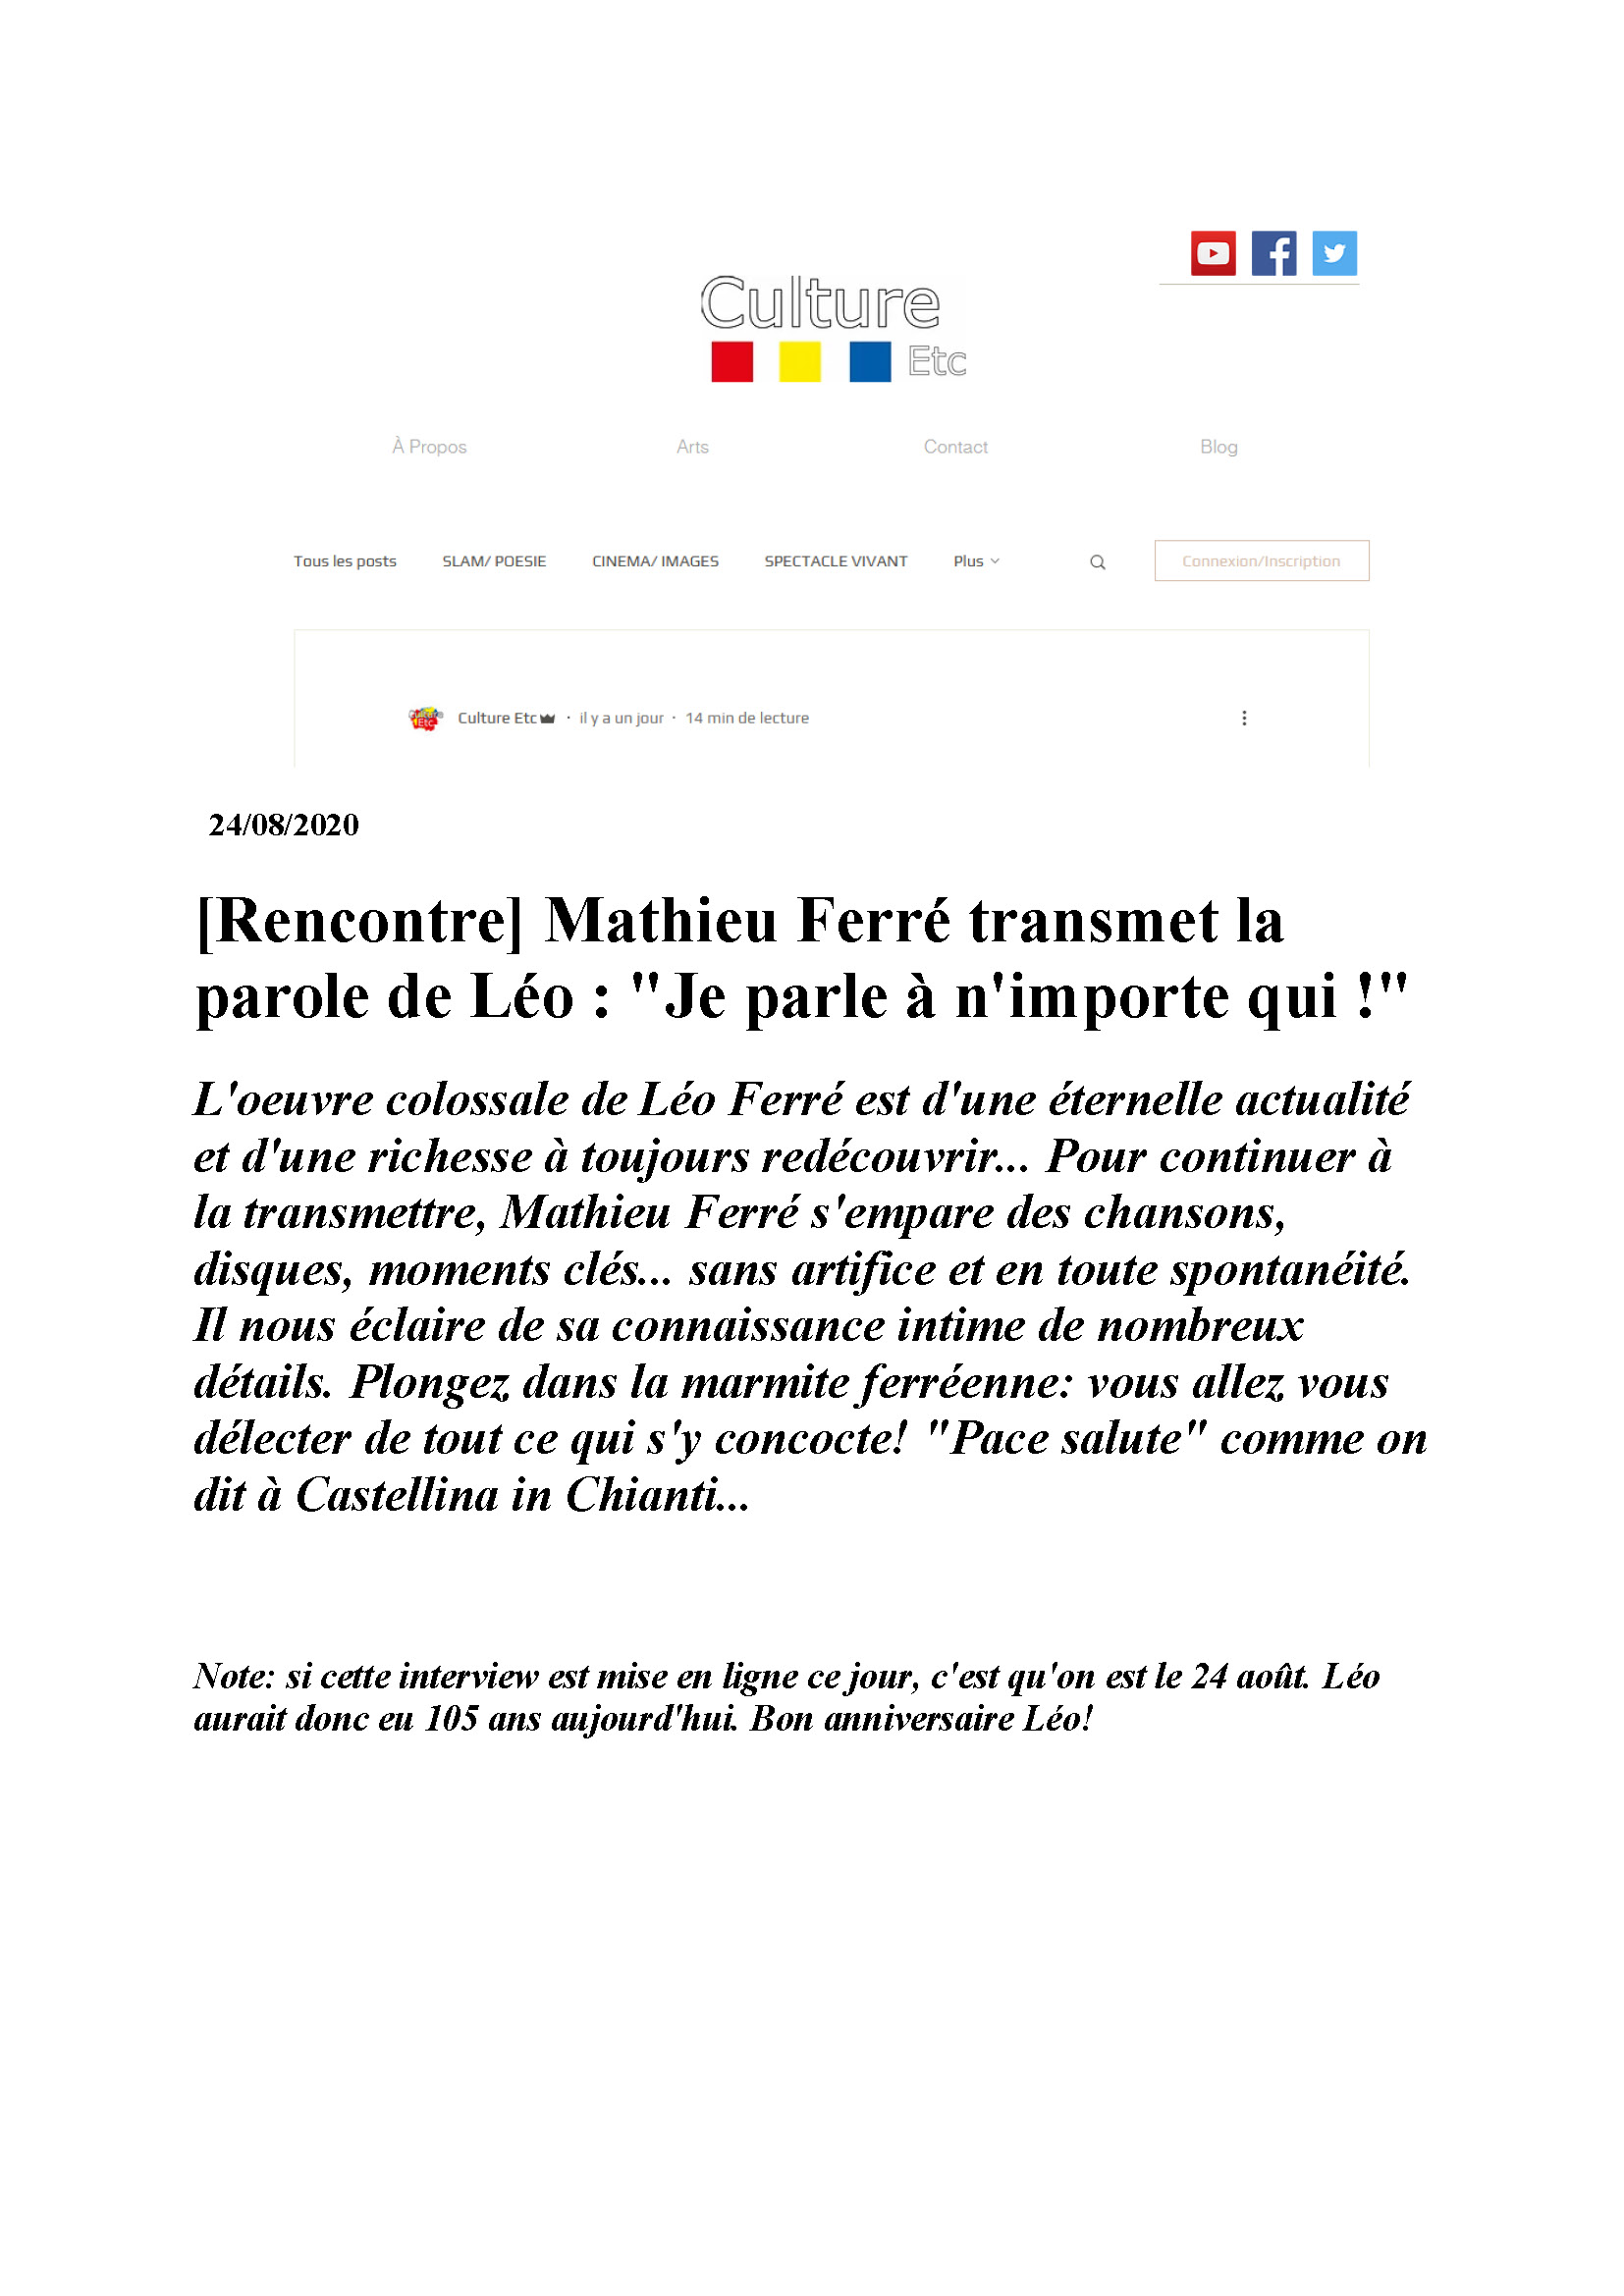 24/08/2020 interview de Mathieu Ferré 